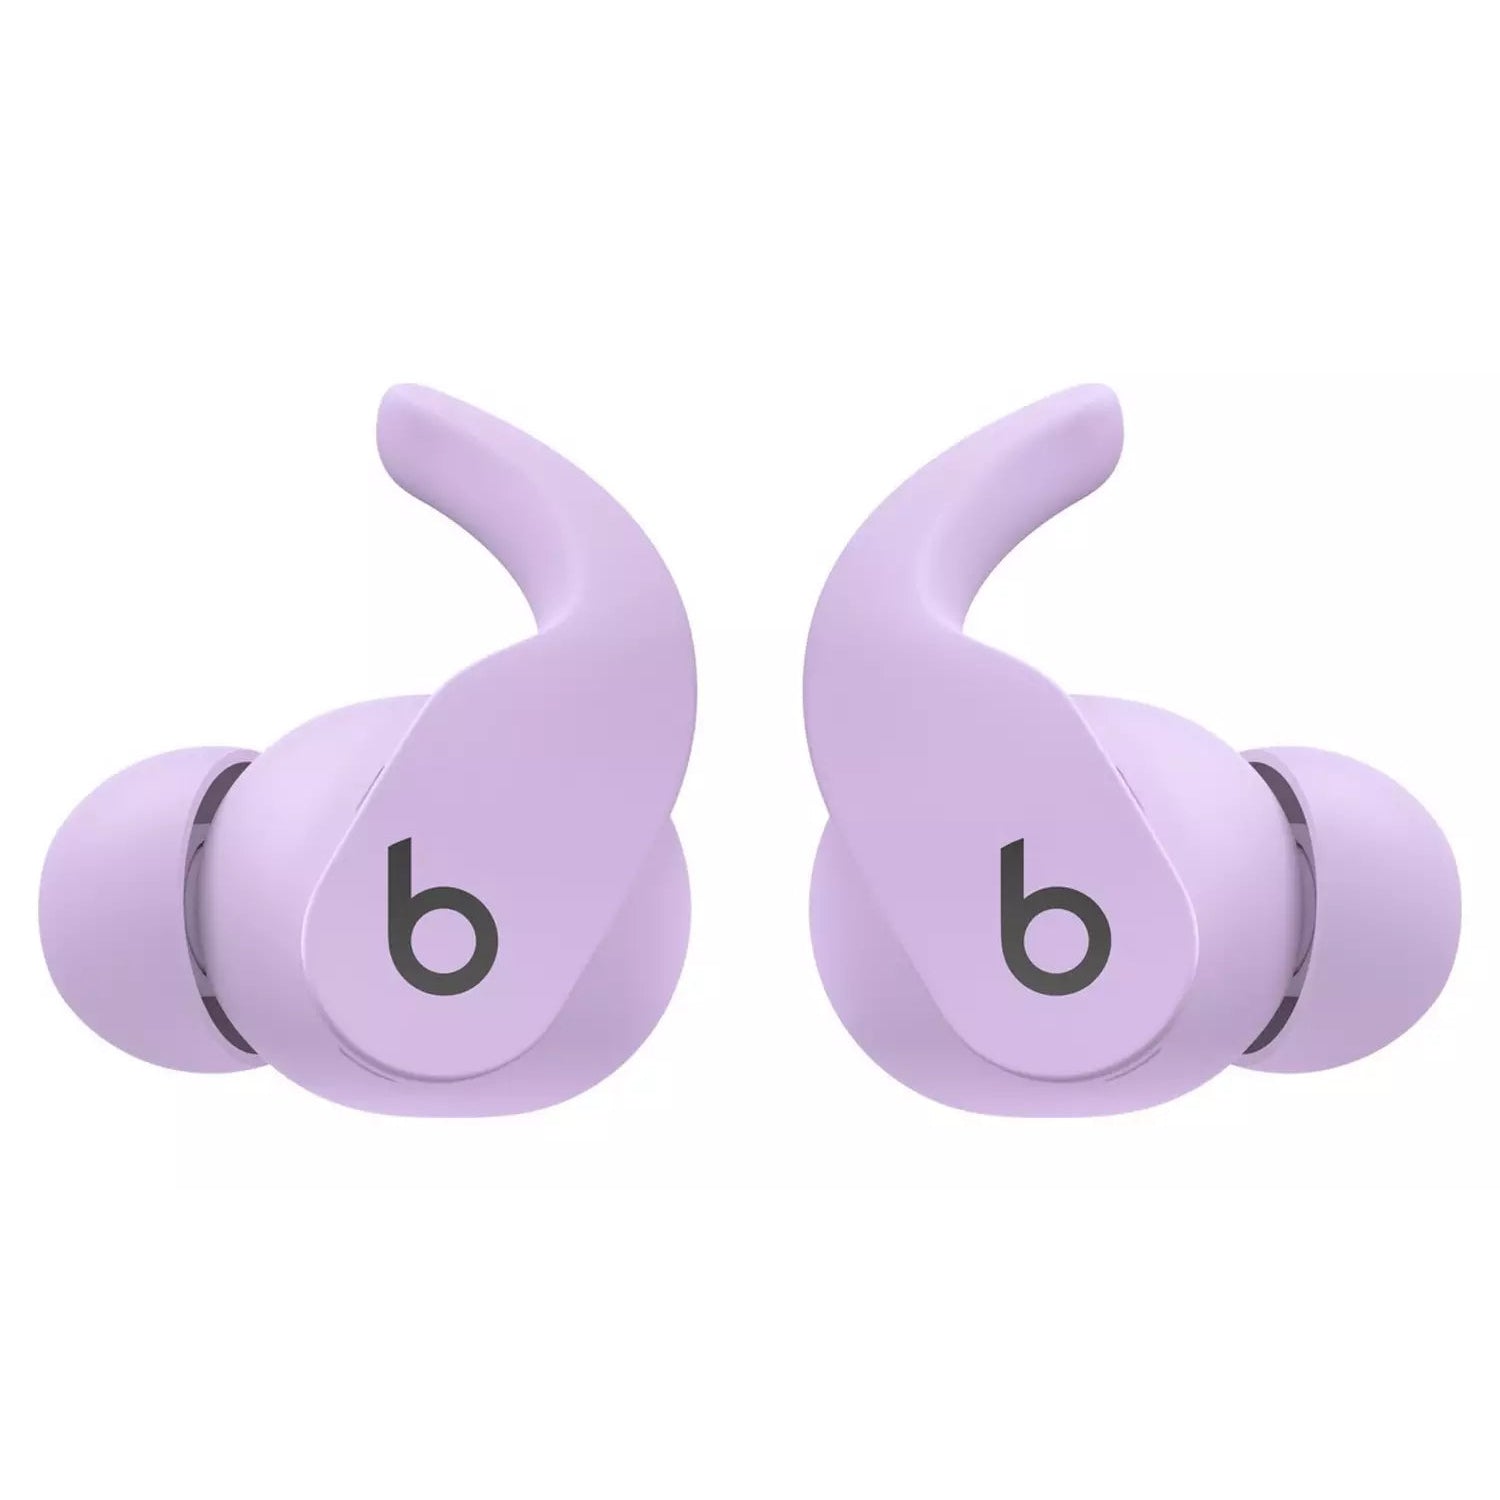 Beats Fit Pro True Wireless In-Ear Earbuds - Purple - Refurbished Pristine